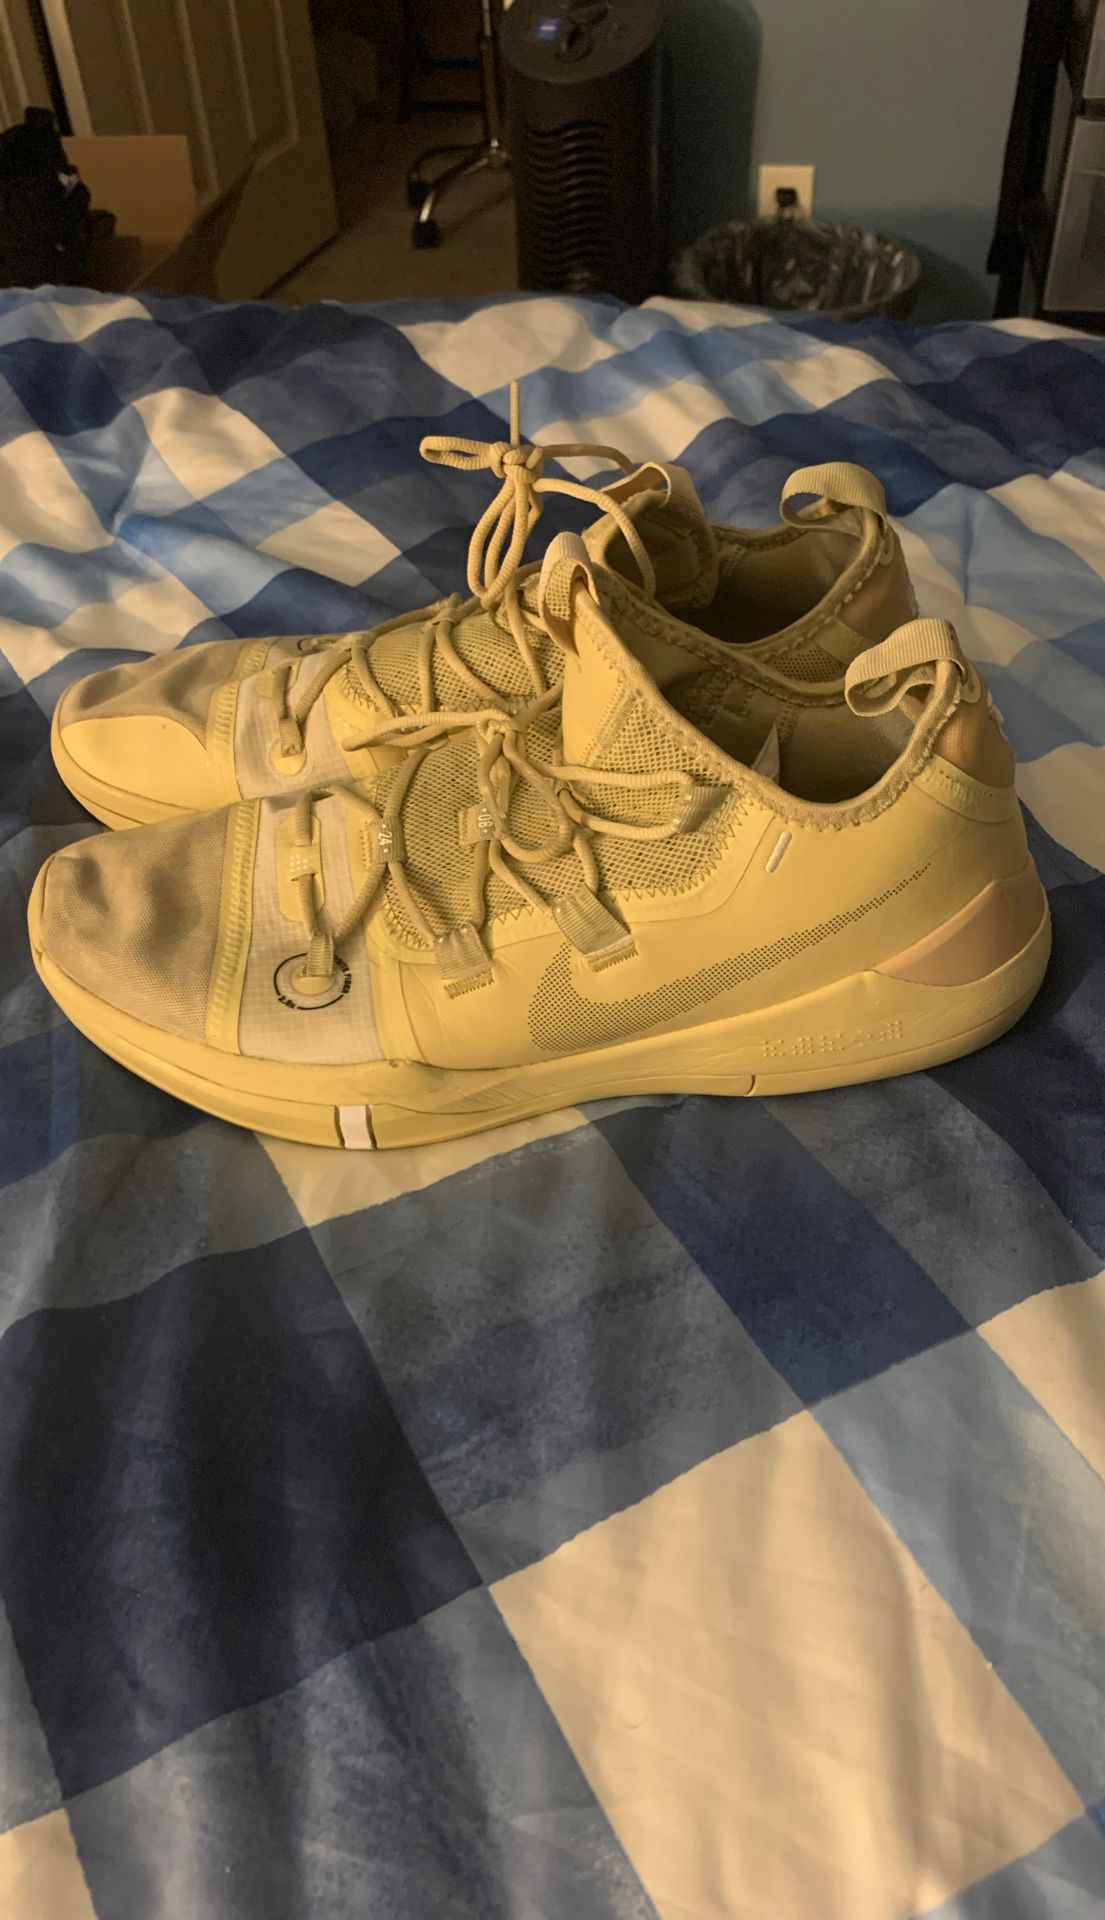 Nike Kobe AD gold basketball shoes size 14